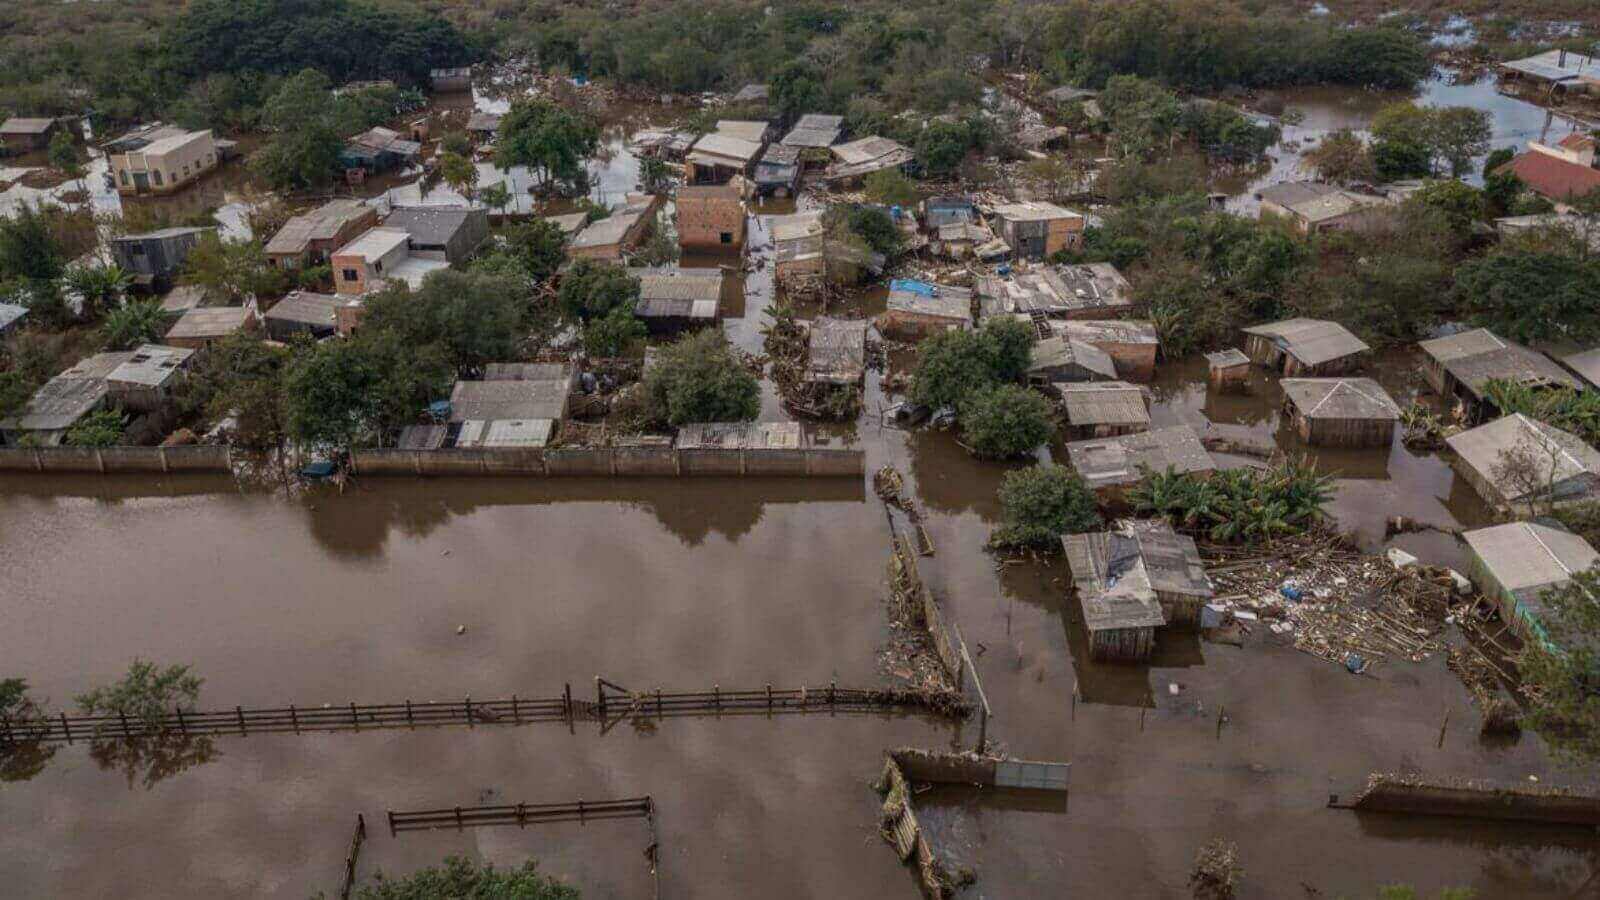 Bairro alagado após enchente, mostrando casas inundadas e danos causados pela água em uma comunidade do Rio Grande do Sul.